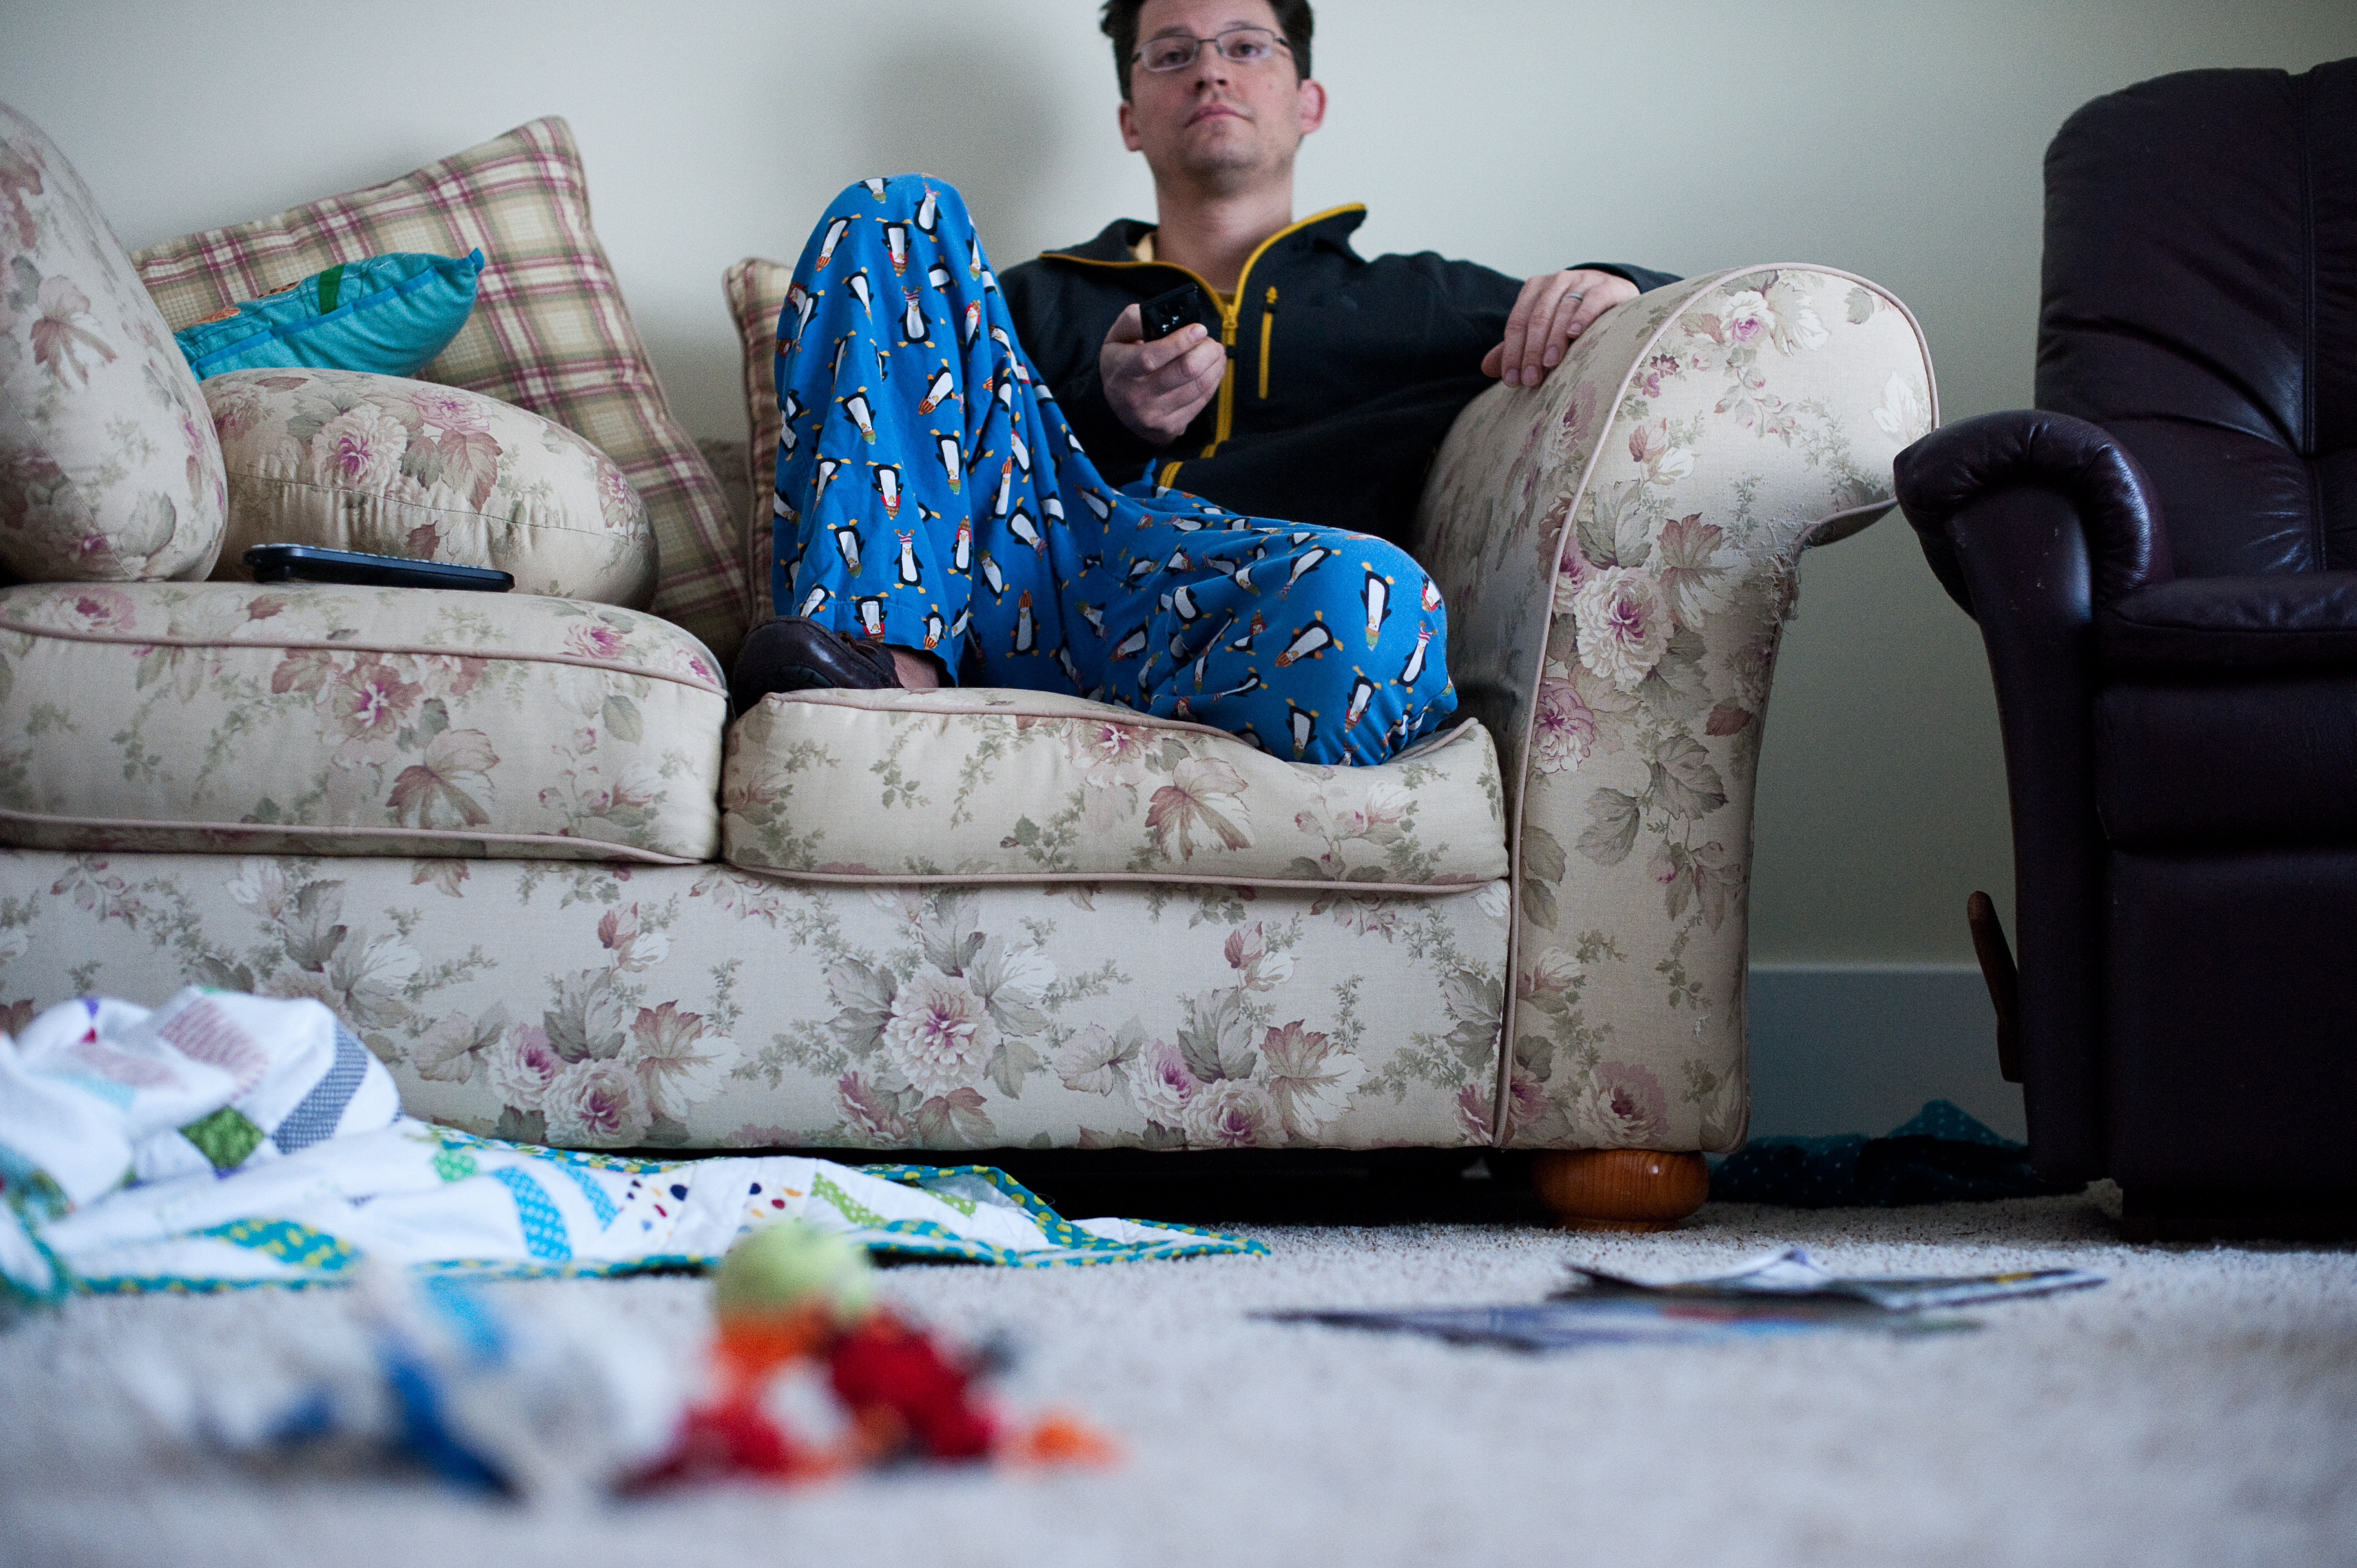 Un homme paresseux assis et regardant la télévision avec une maison en désordre | Source : Getty Images